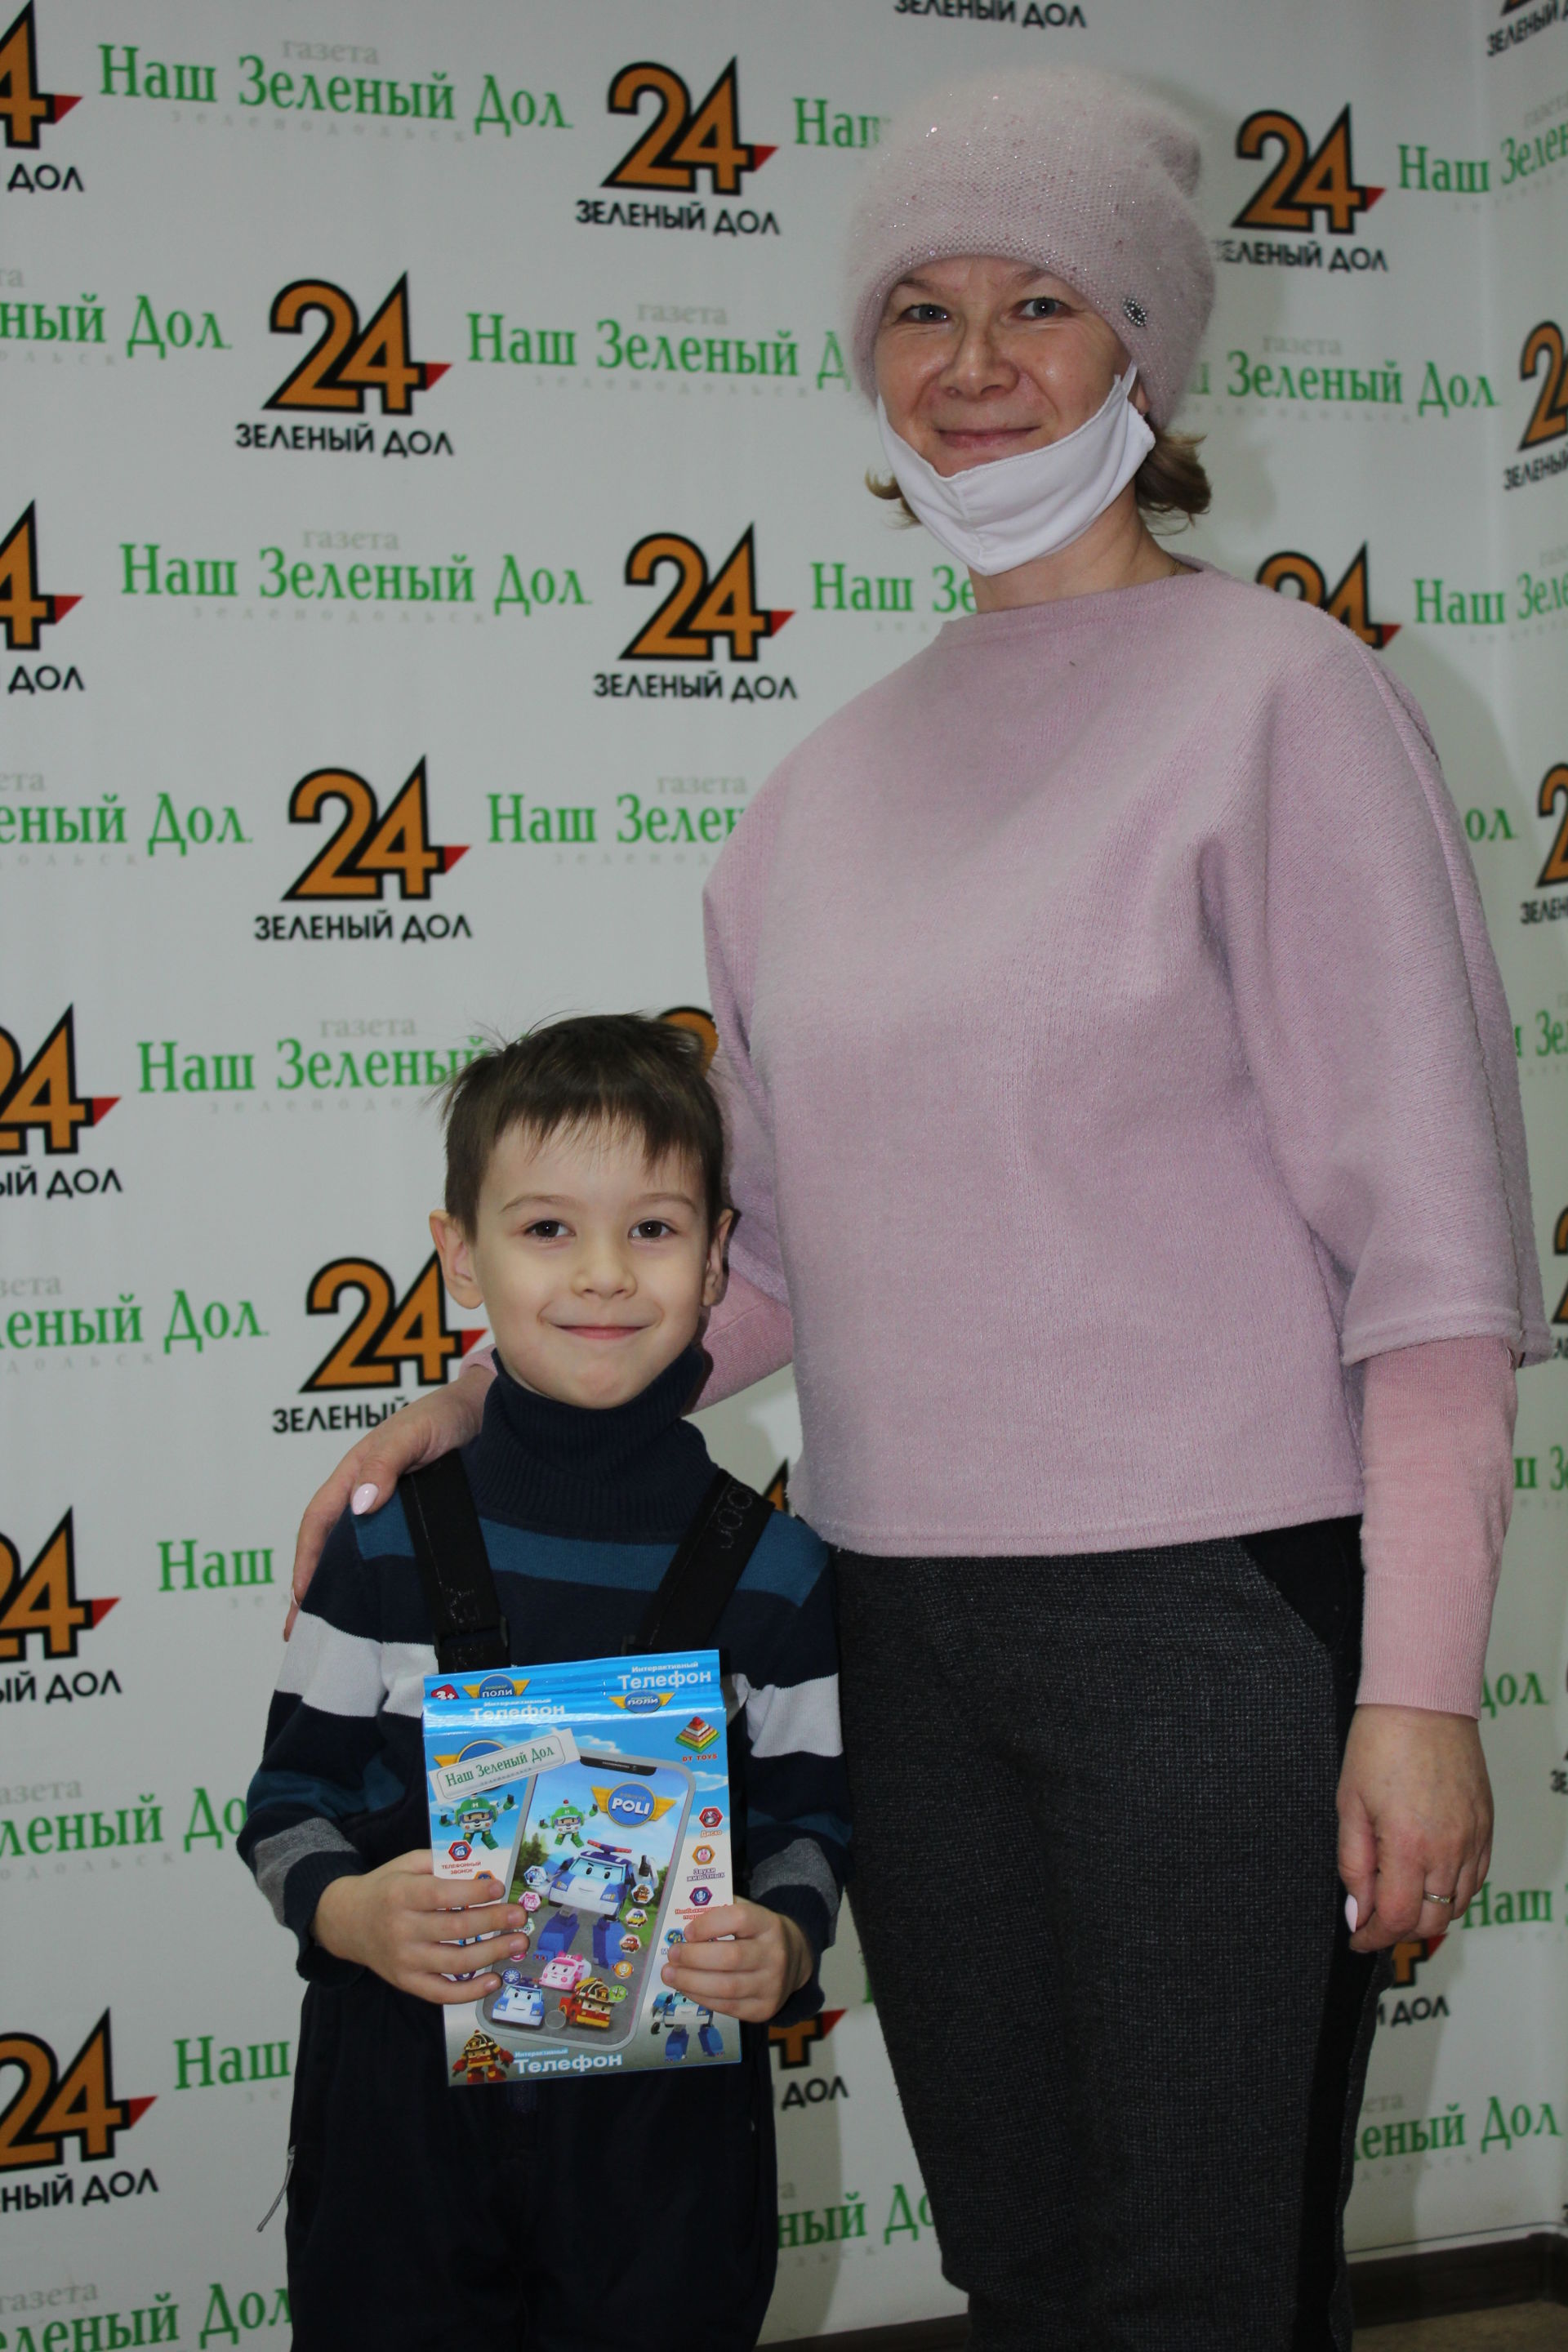 Участники конкурса «Моя дружная семья» газеты «Зеленый Дол» получили подарки